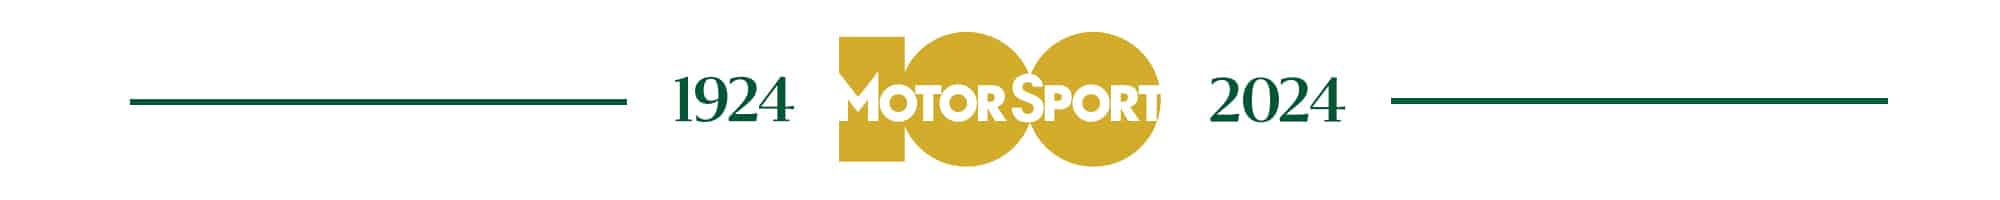 Motor Sport 100 web header logo